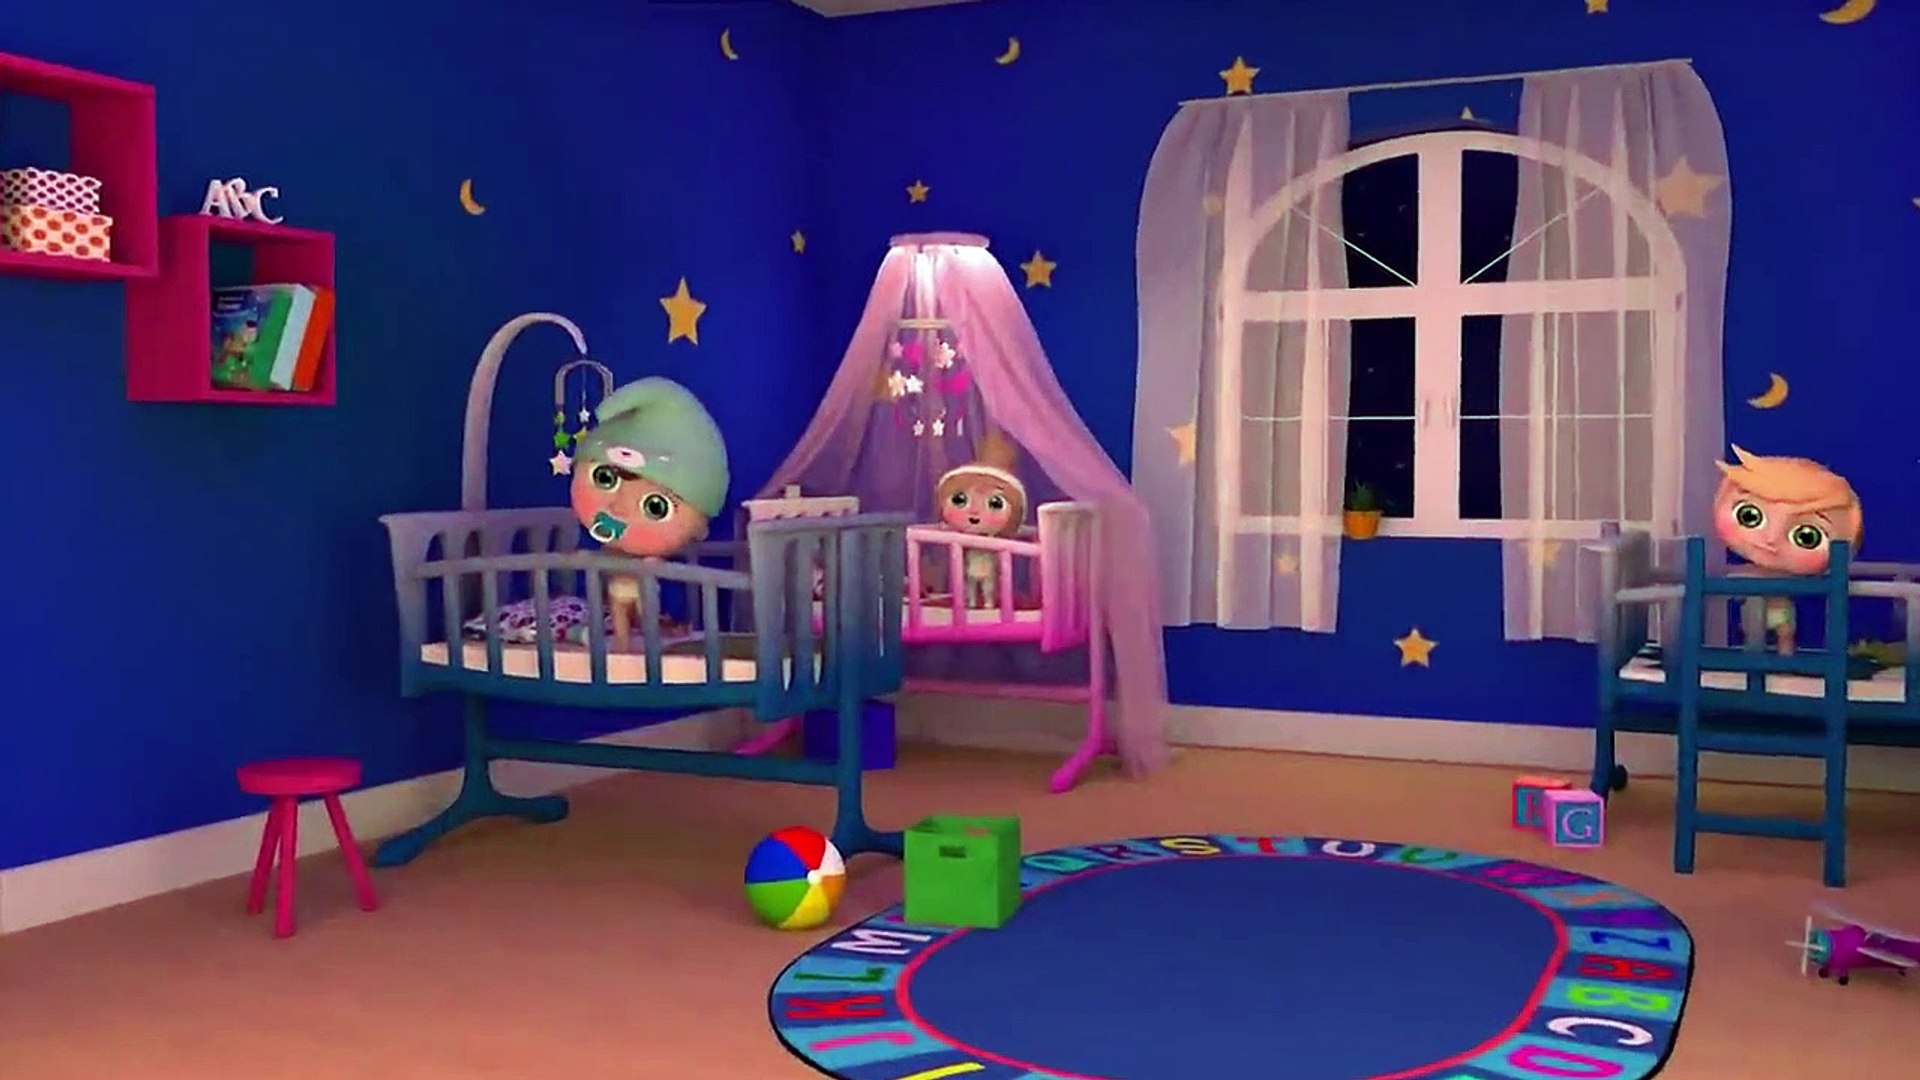 يلا تنام يلا تنام - عشر دقائق هادئة لينام طفلك - - فيديو Dailymotion